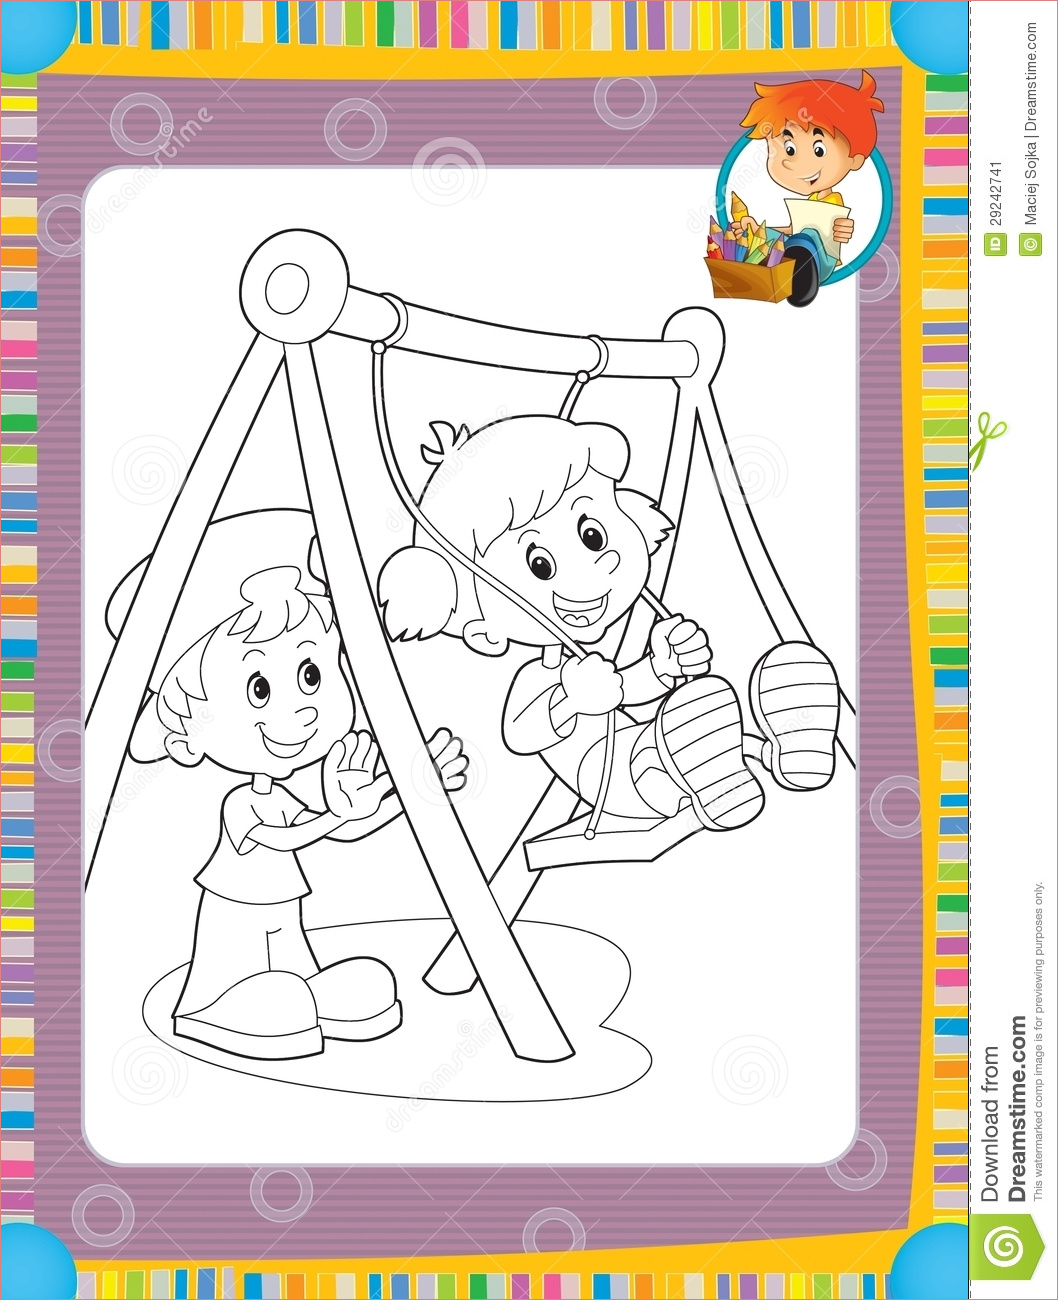 image stock la page avec des exercices pour des enfants livre de coloriage illustration pour les enfants image